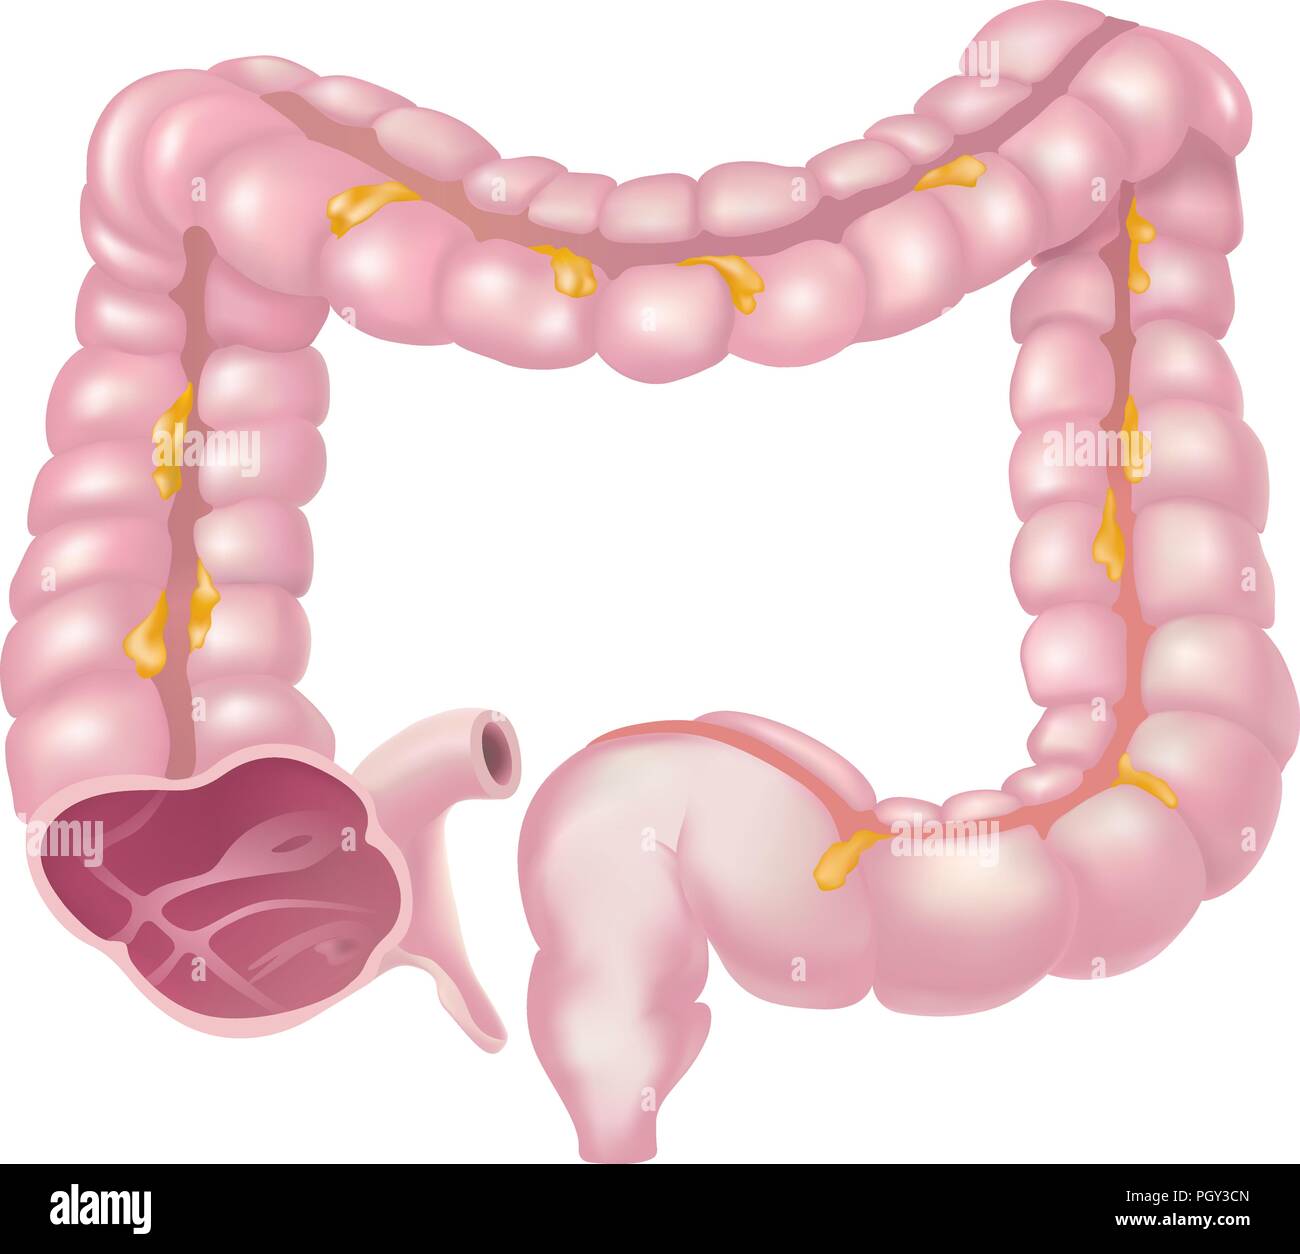 L'intestino crasso, chiamato anche il colon, fa parte delle fasi finali della digestione Illustrazione Vettoriale